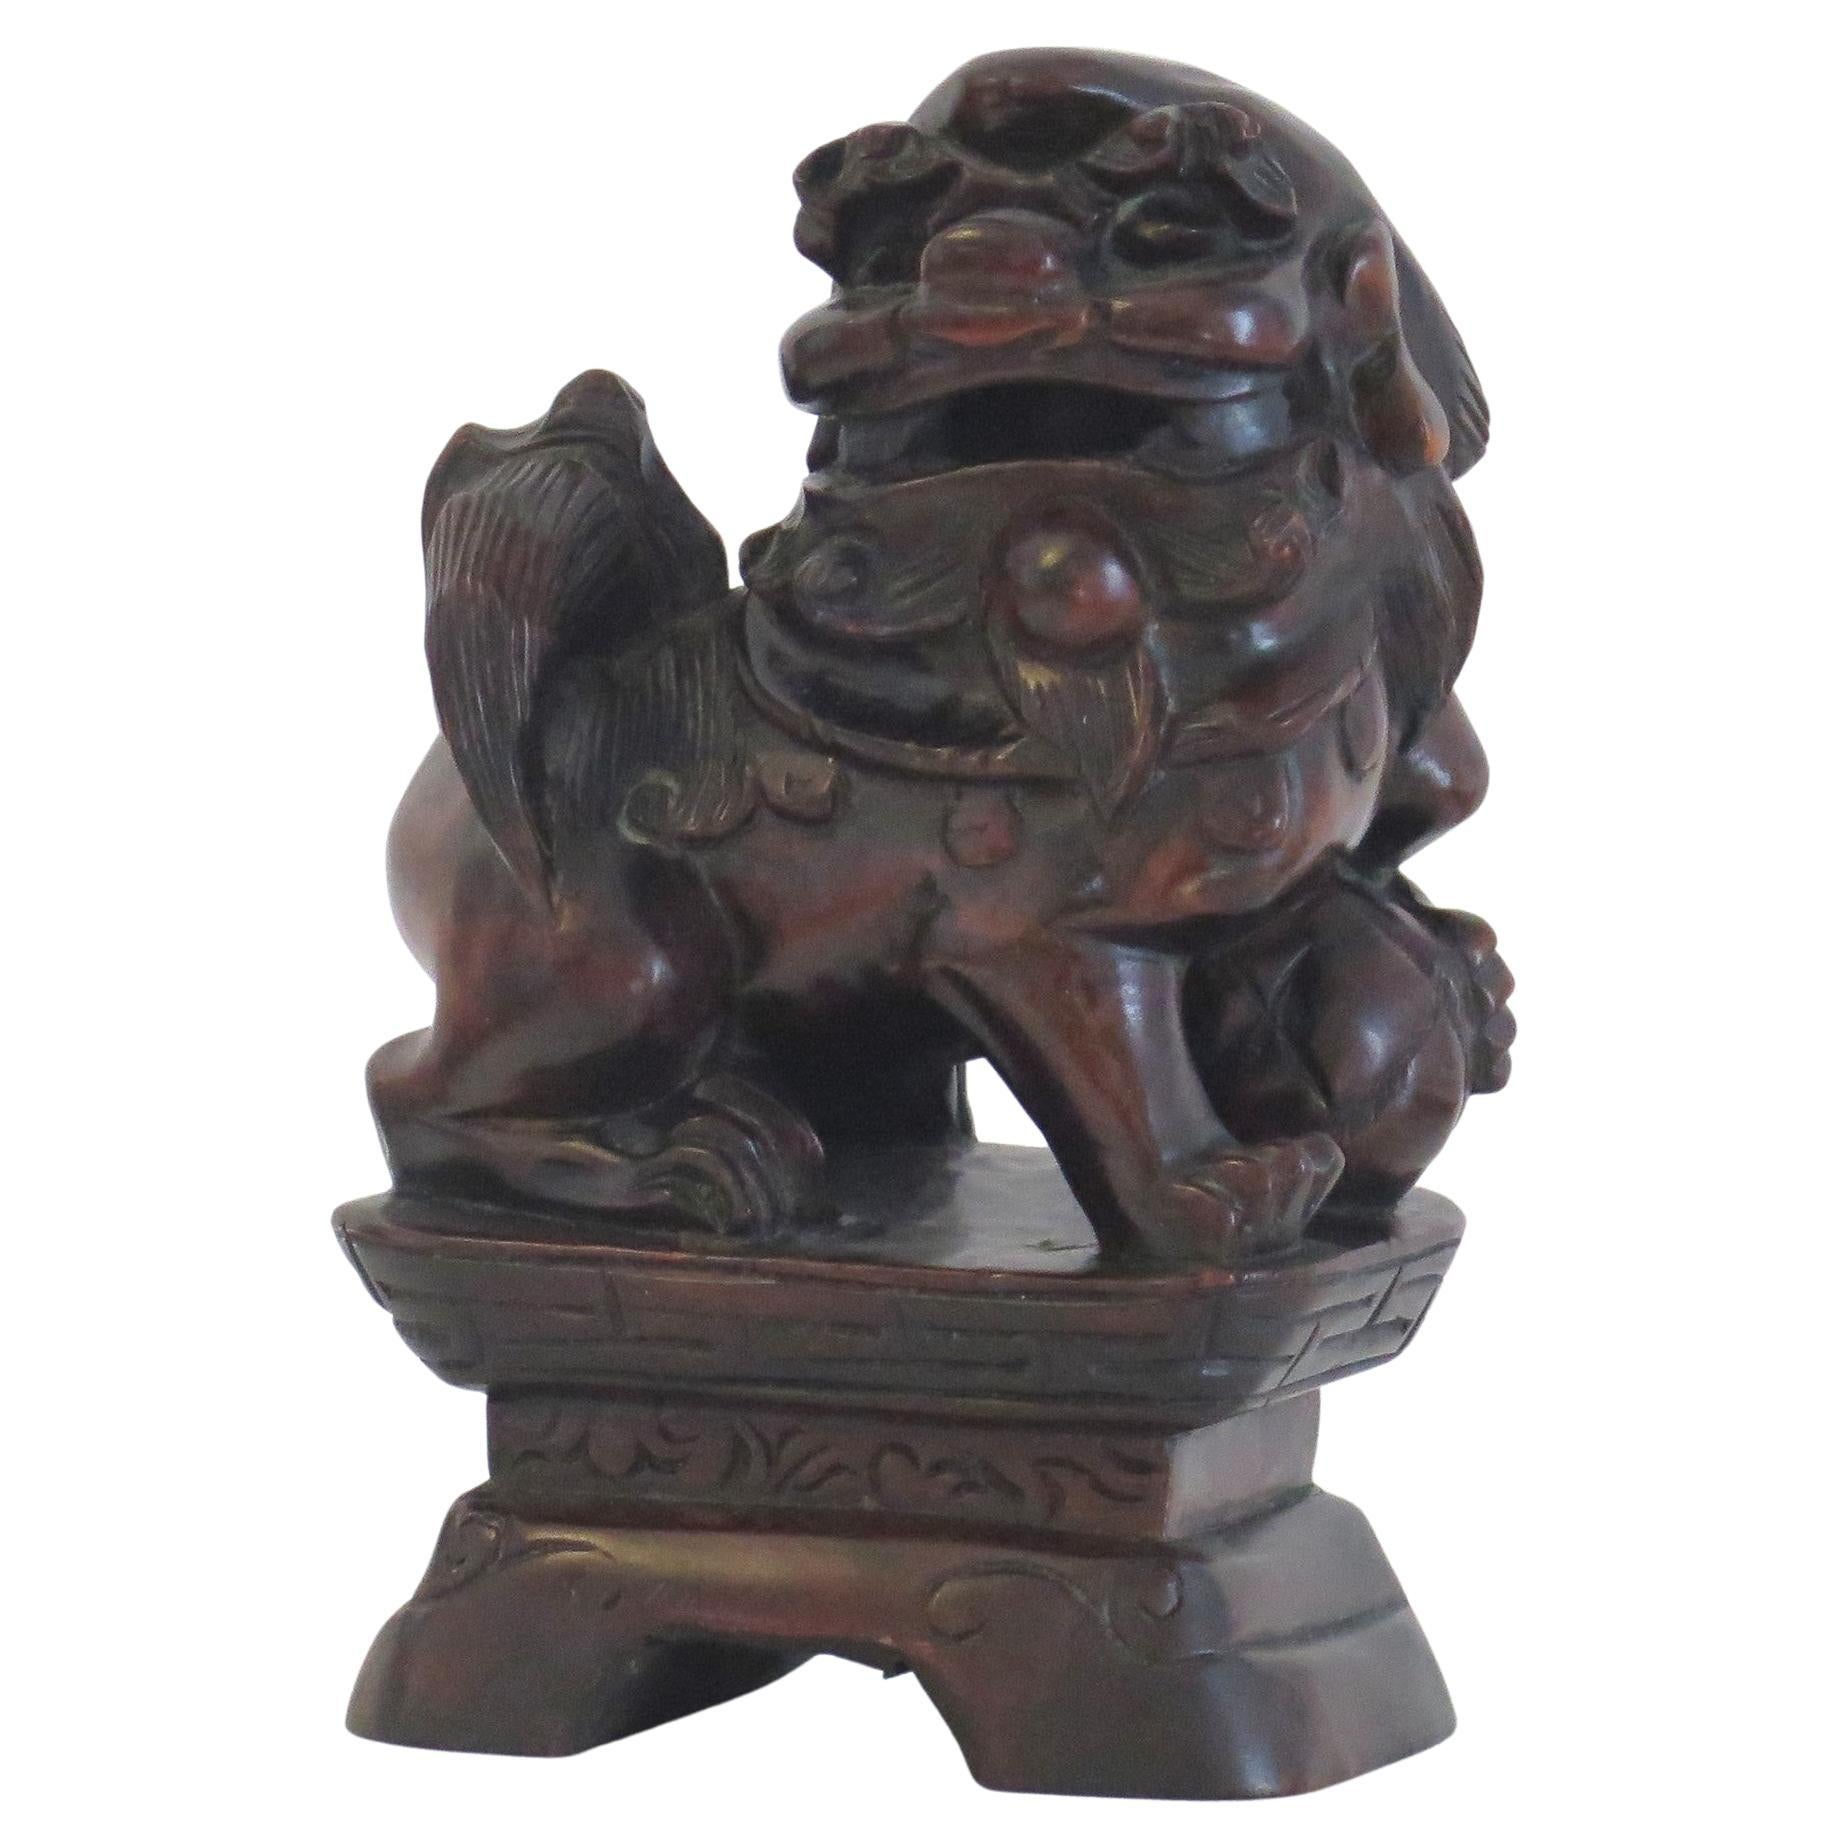 Perro Foo chino de madera dura tallado a mano y firmado, Qing circa 1900